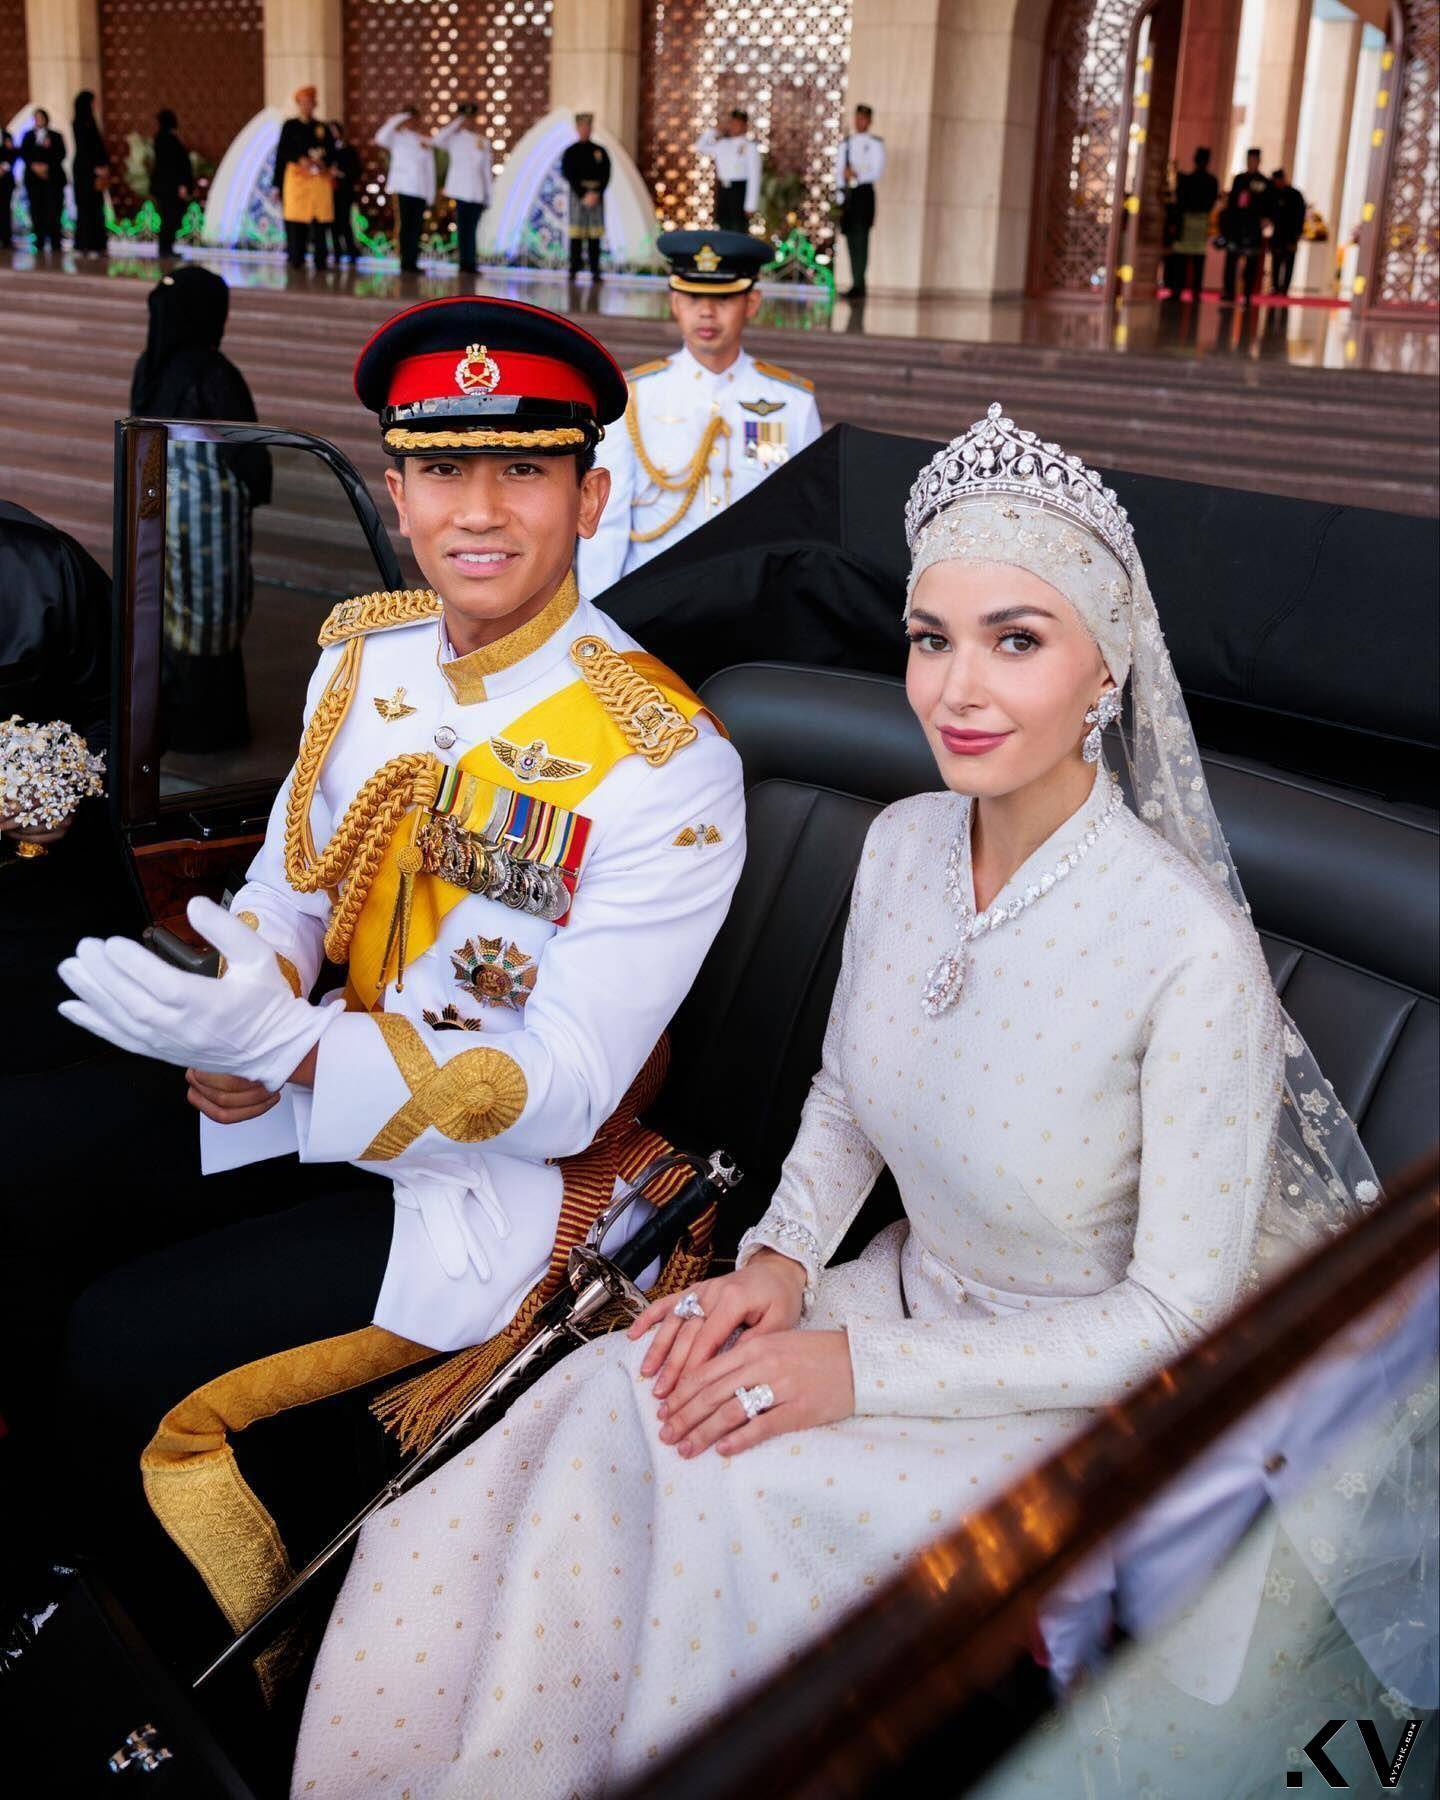 汶莱“亚洲最帅王子”世纪婚礼巨钻闪耀　出卖美娇娘吸奶瓶萌照 时尚穿搭 图2张